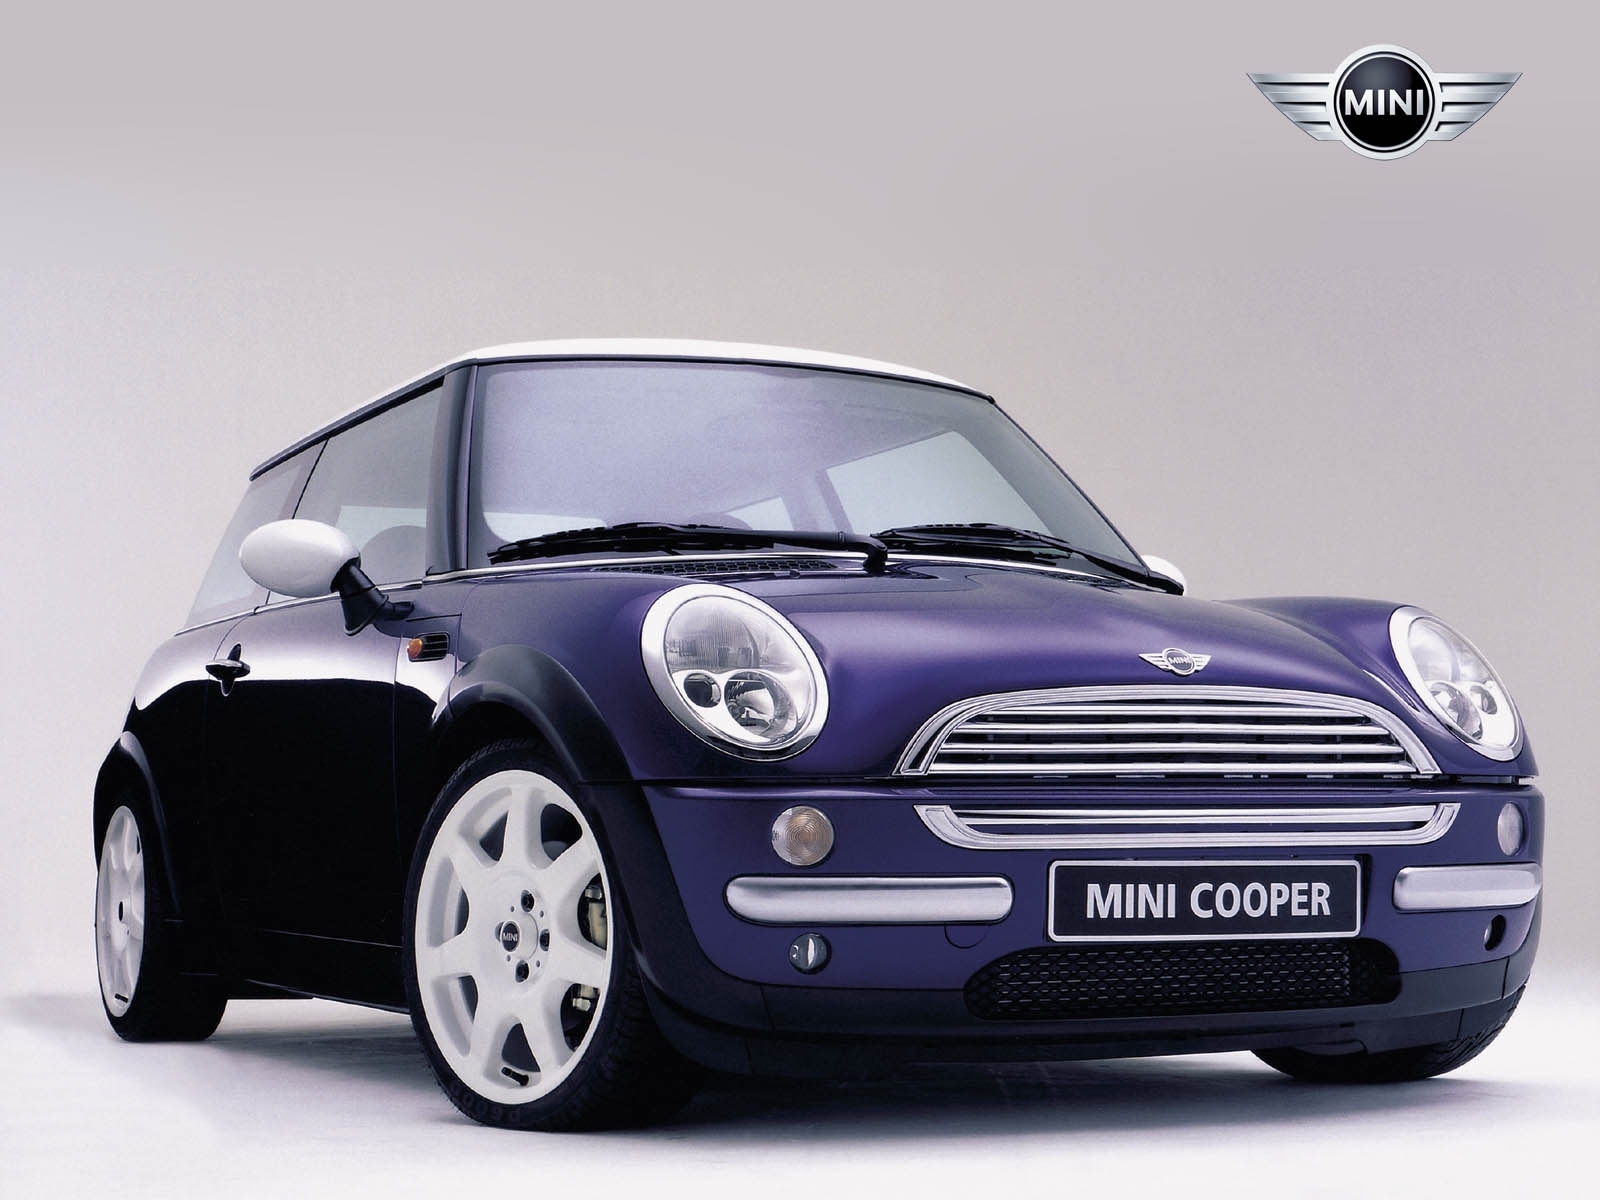 Скачать картинку Мини Купер (Mini Cooper), Машины, Транспорт в телефон бесплатно.